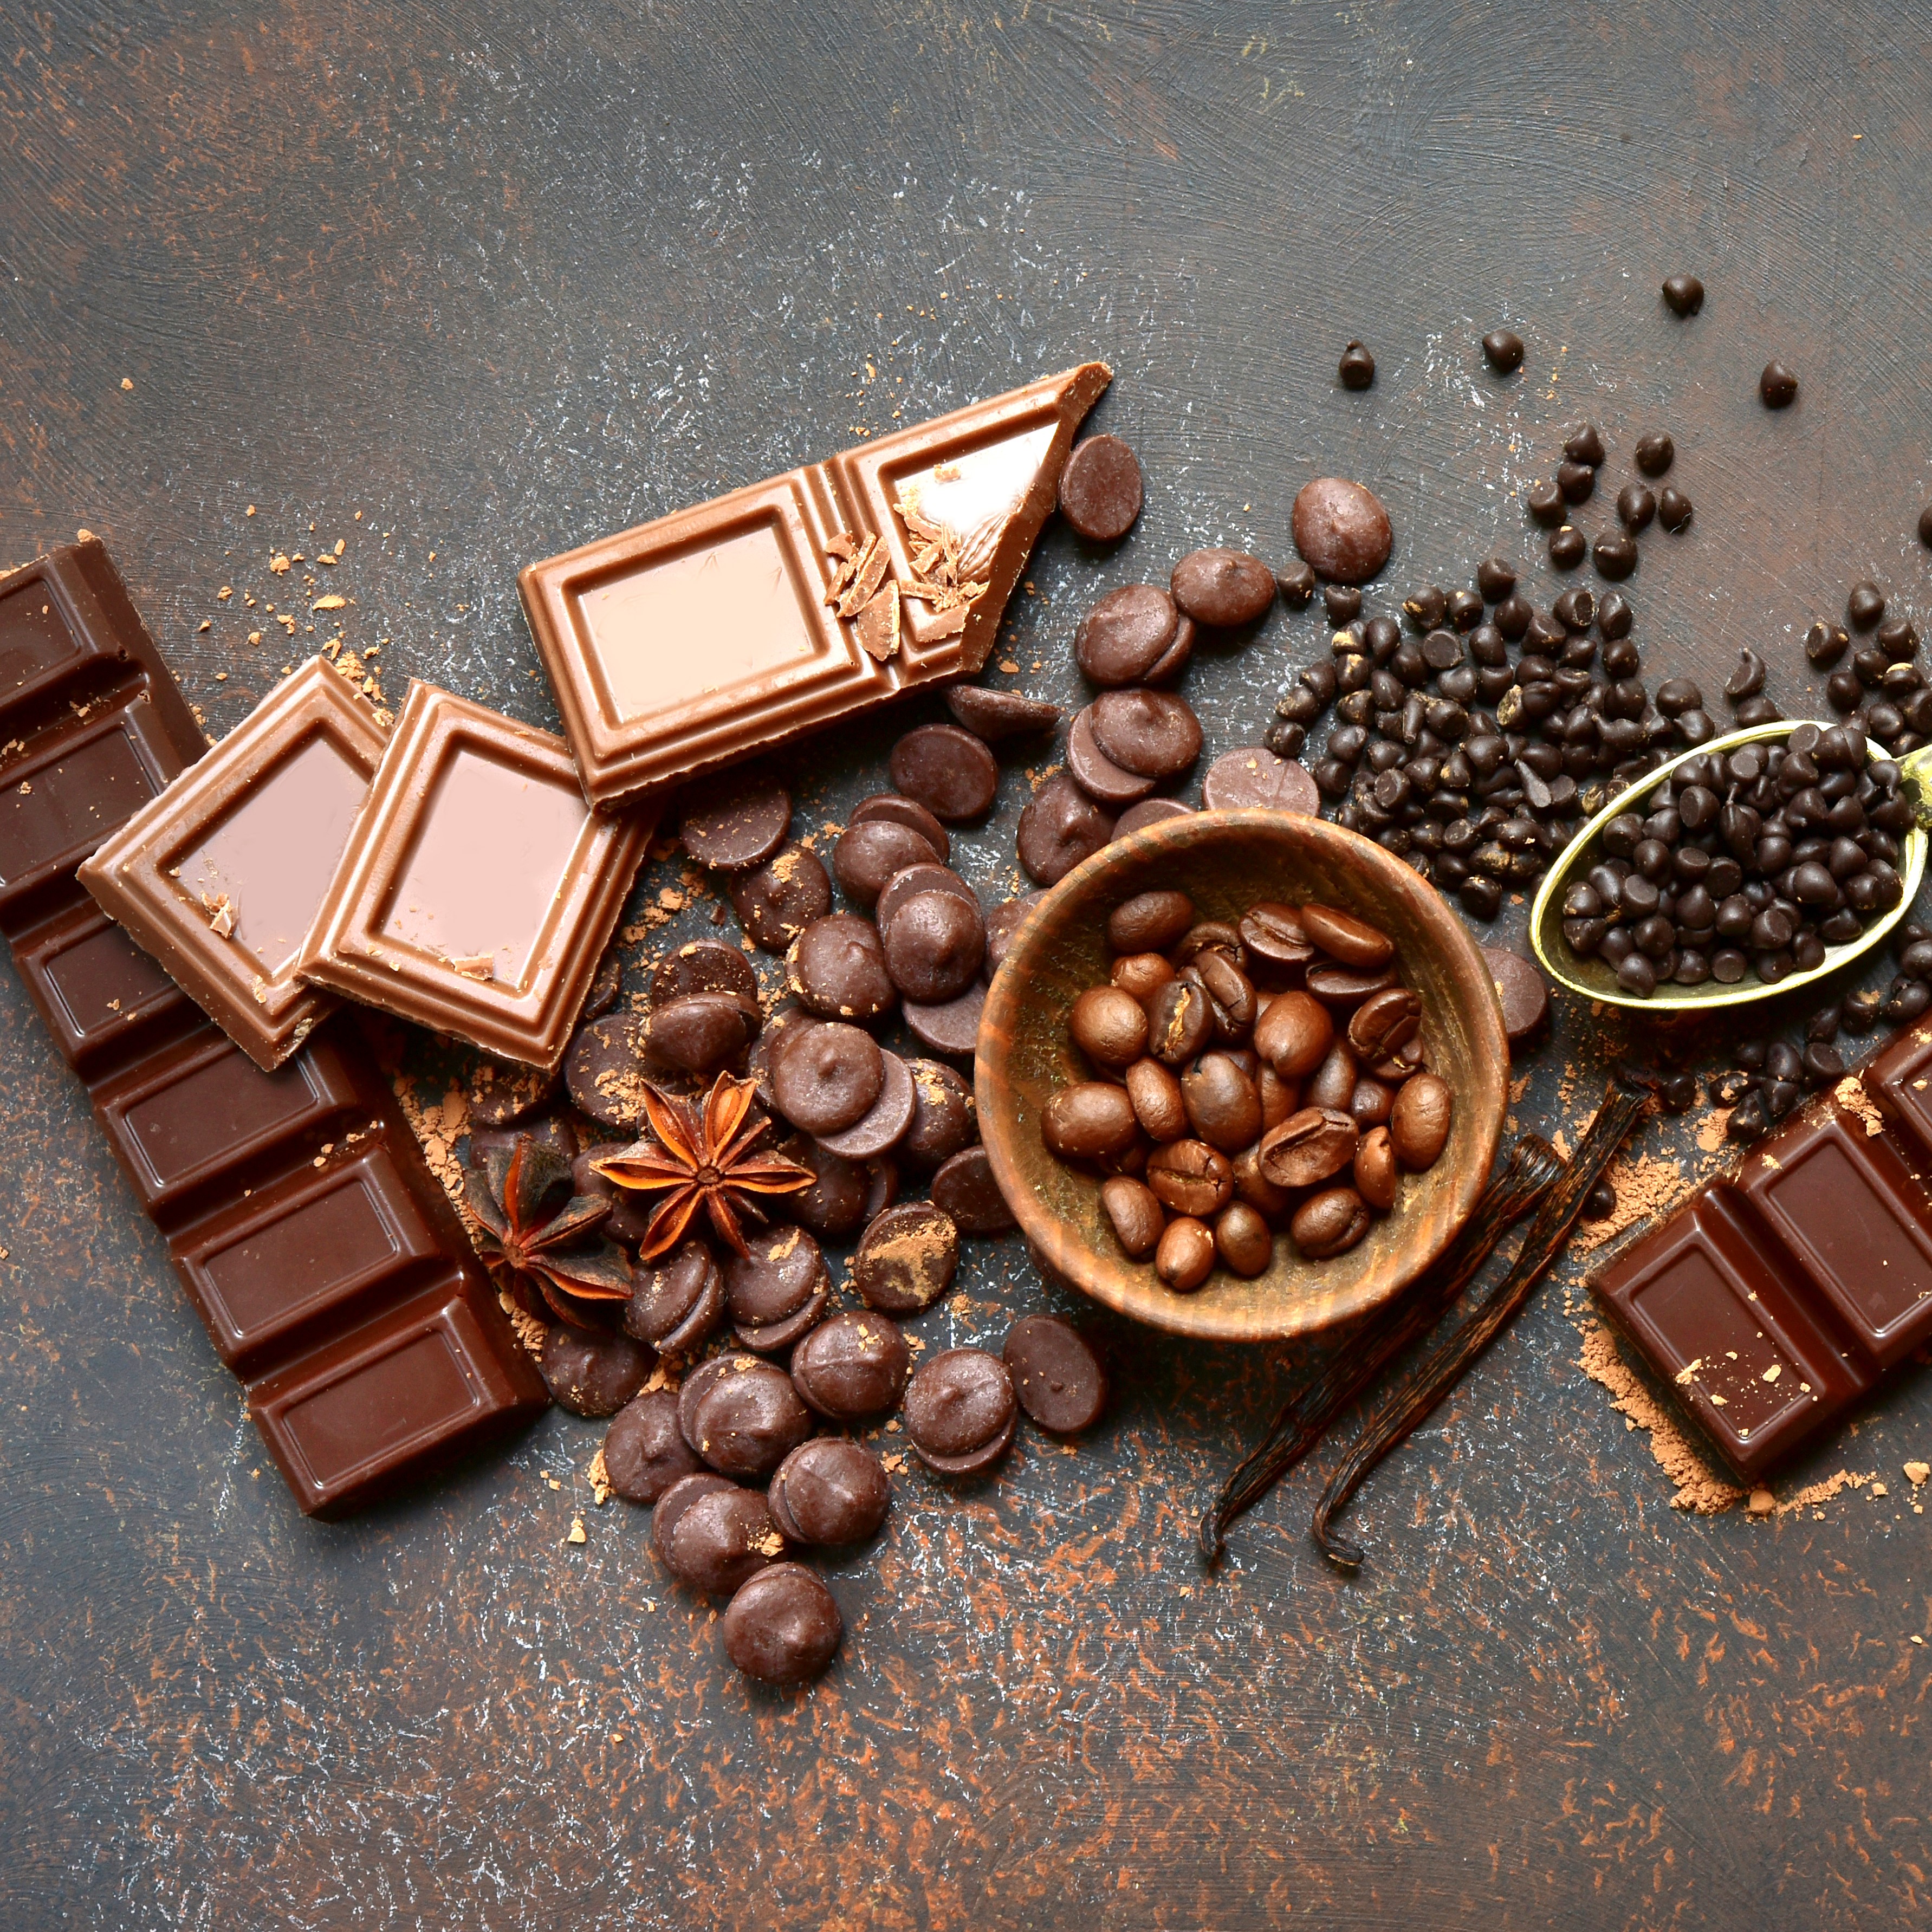 Schokolade in verschiedenen Sorten und Formen